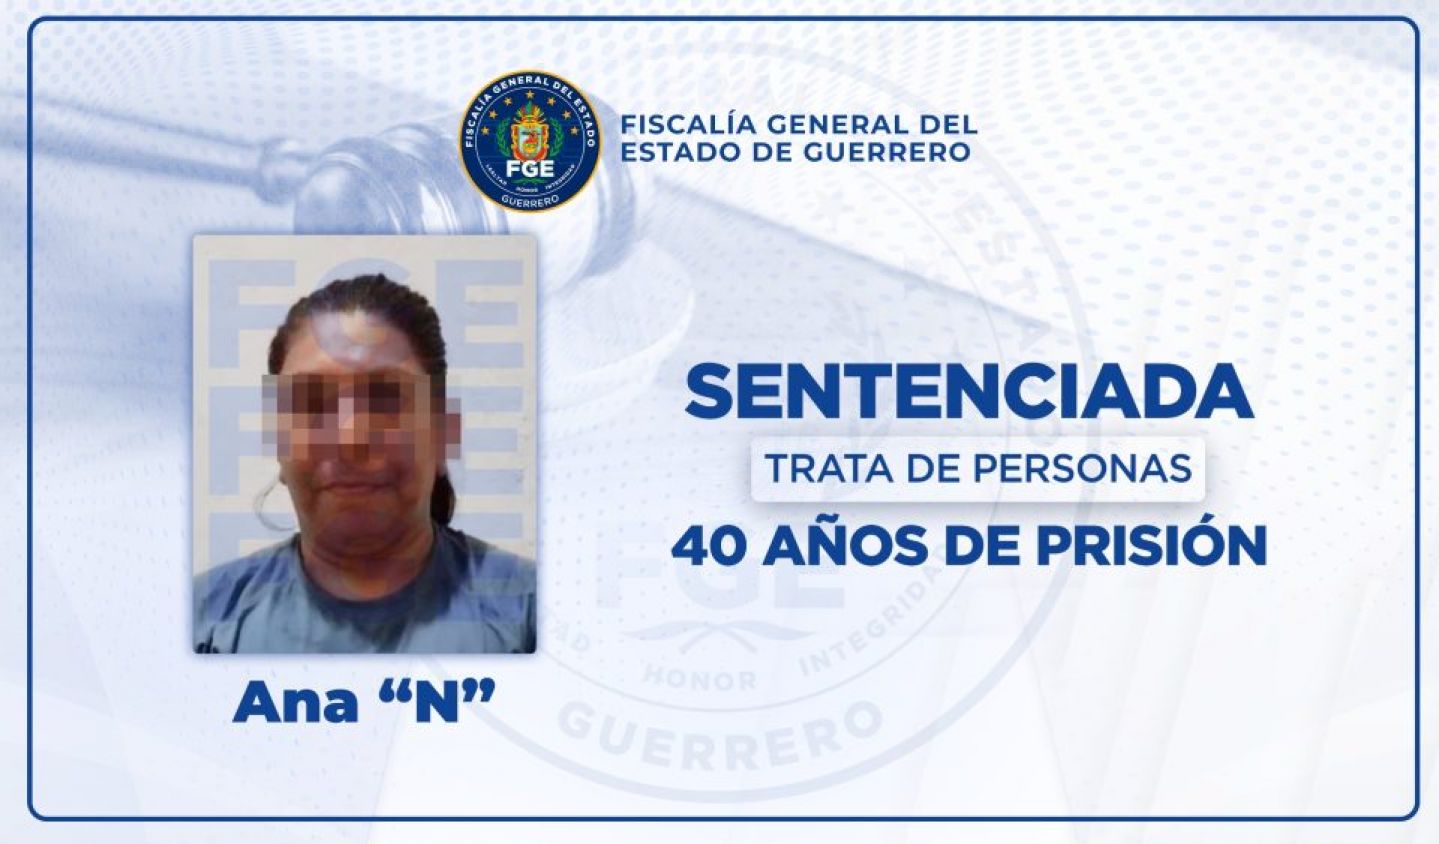 Sentencia a 40 años de prisión a una madre por golpear y prostituir a su hija en Acapulco 